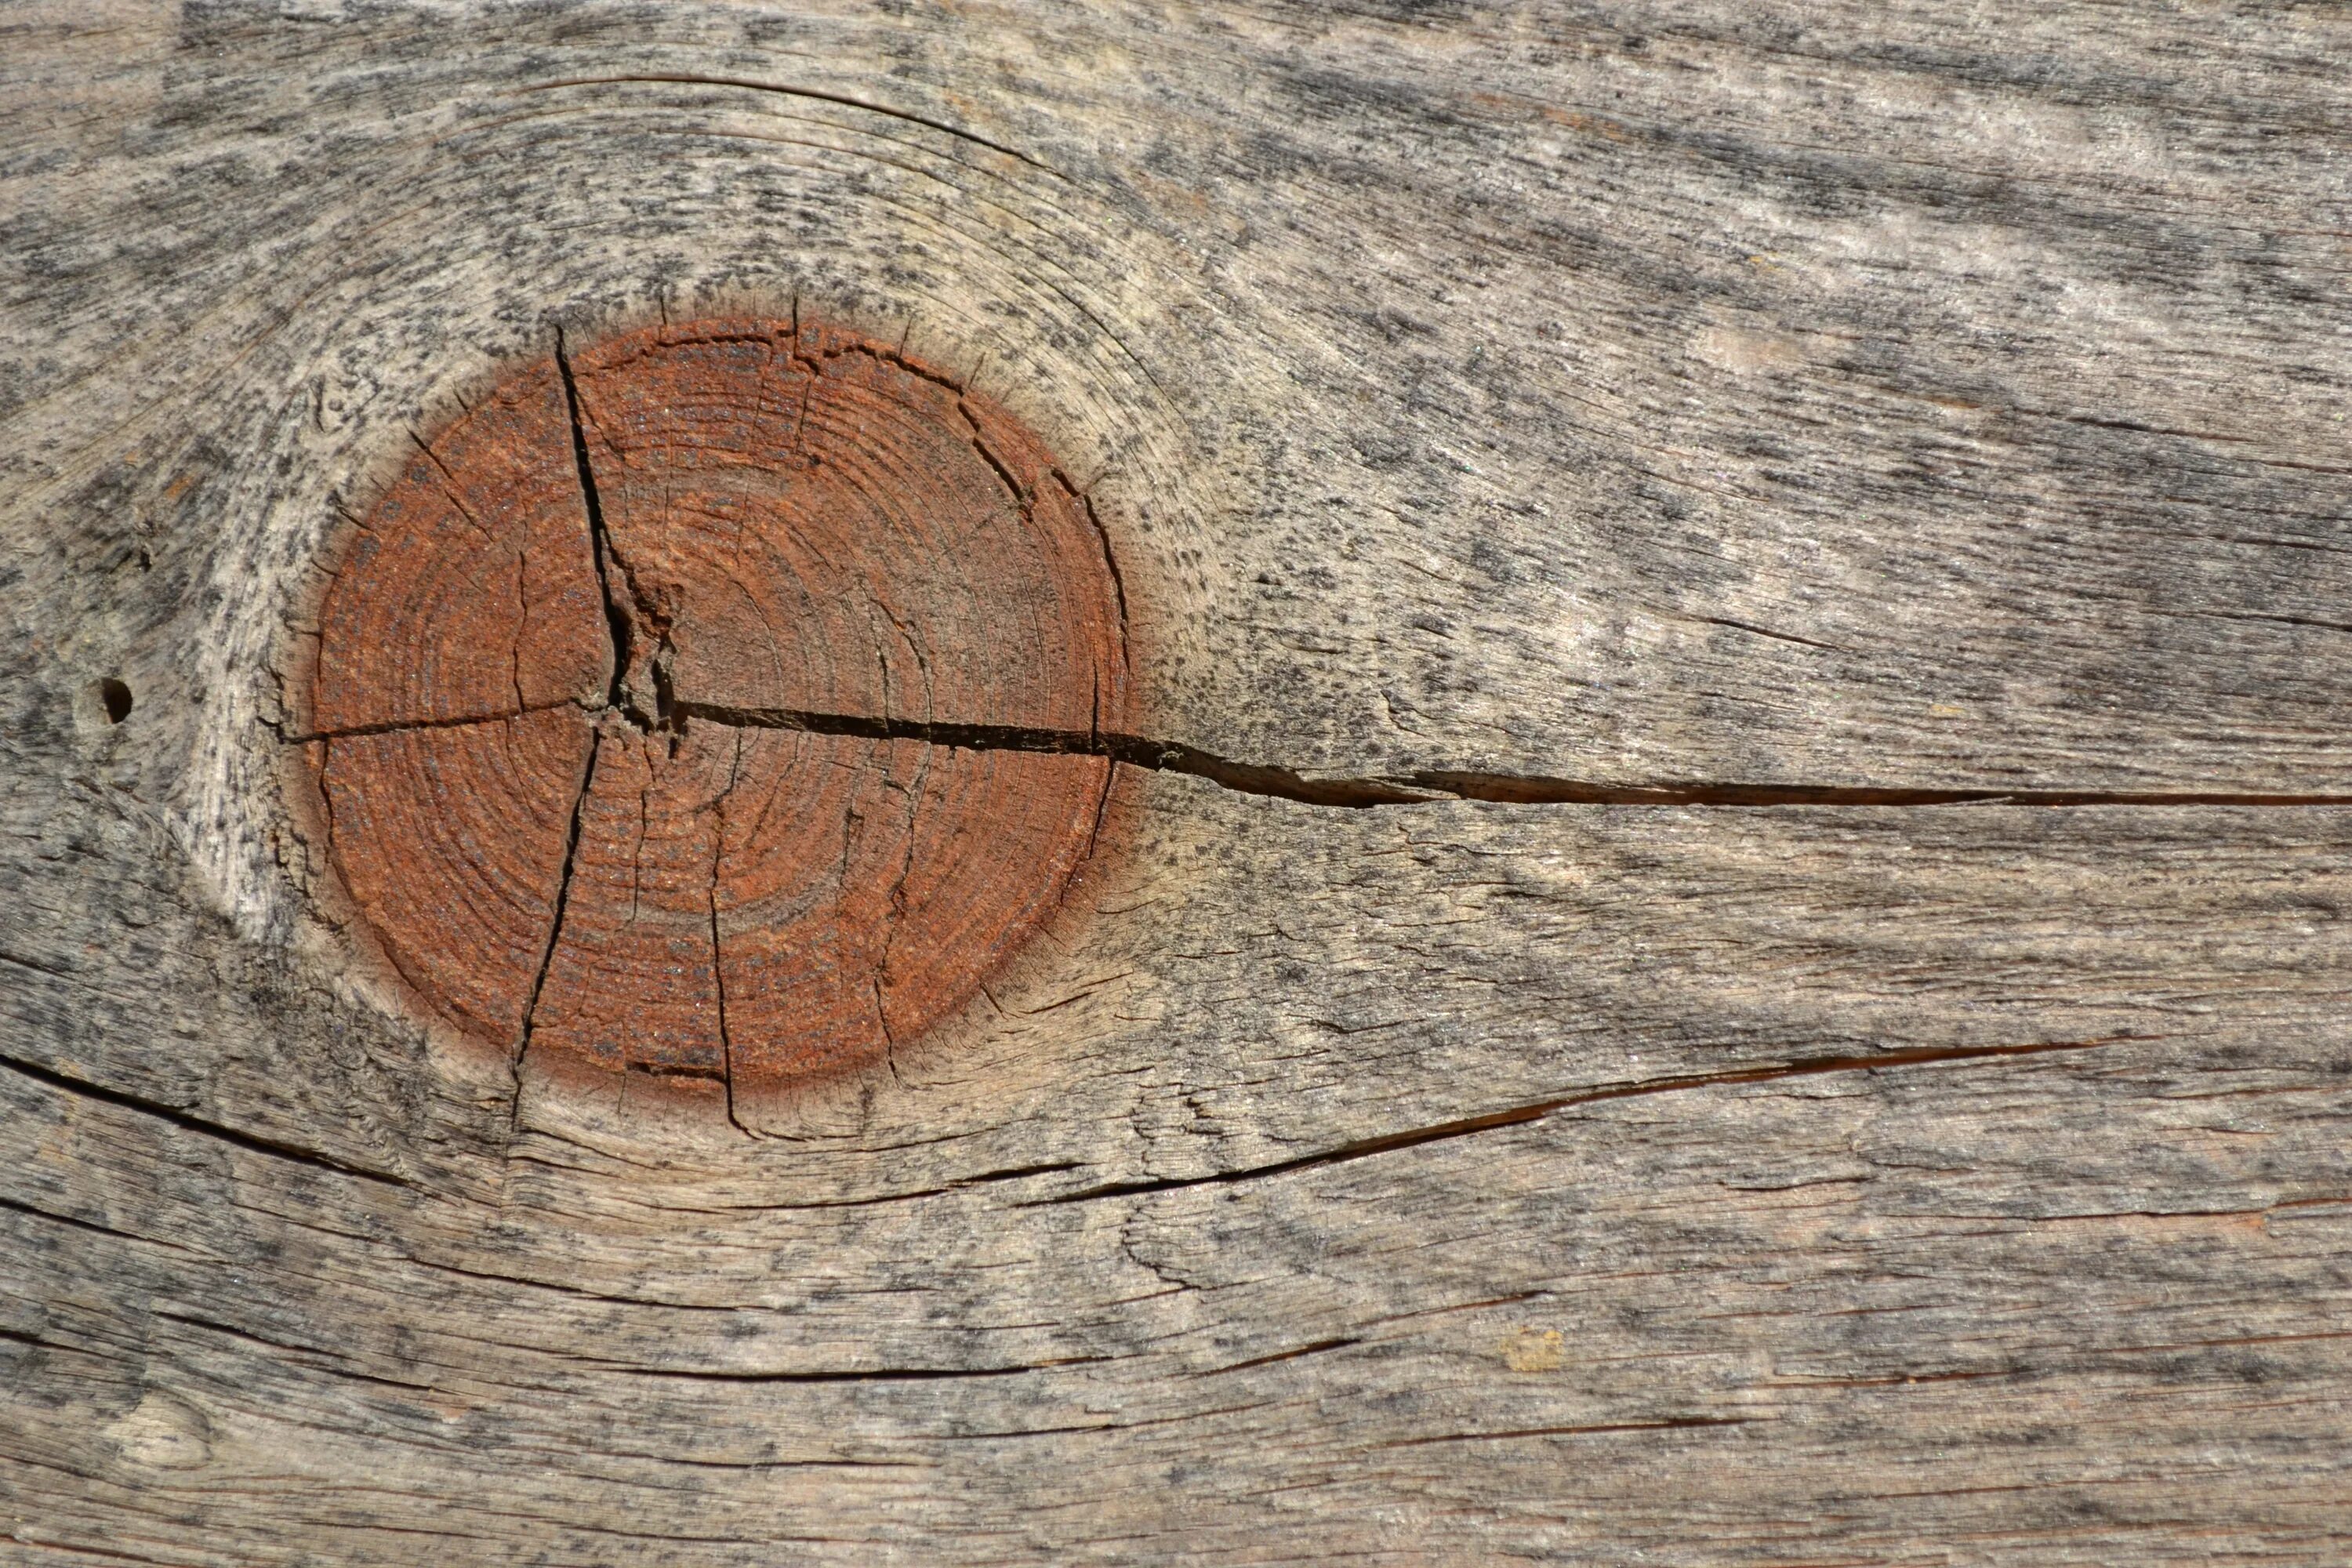 Трещина на дереве. Трещина в дереве. Трещины древесины. Щель в дереве. Текстура дерева с трещинами.